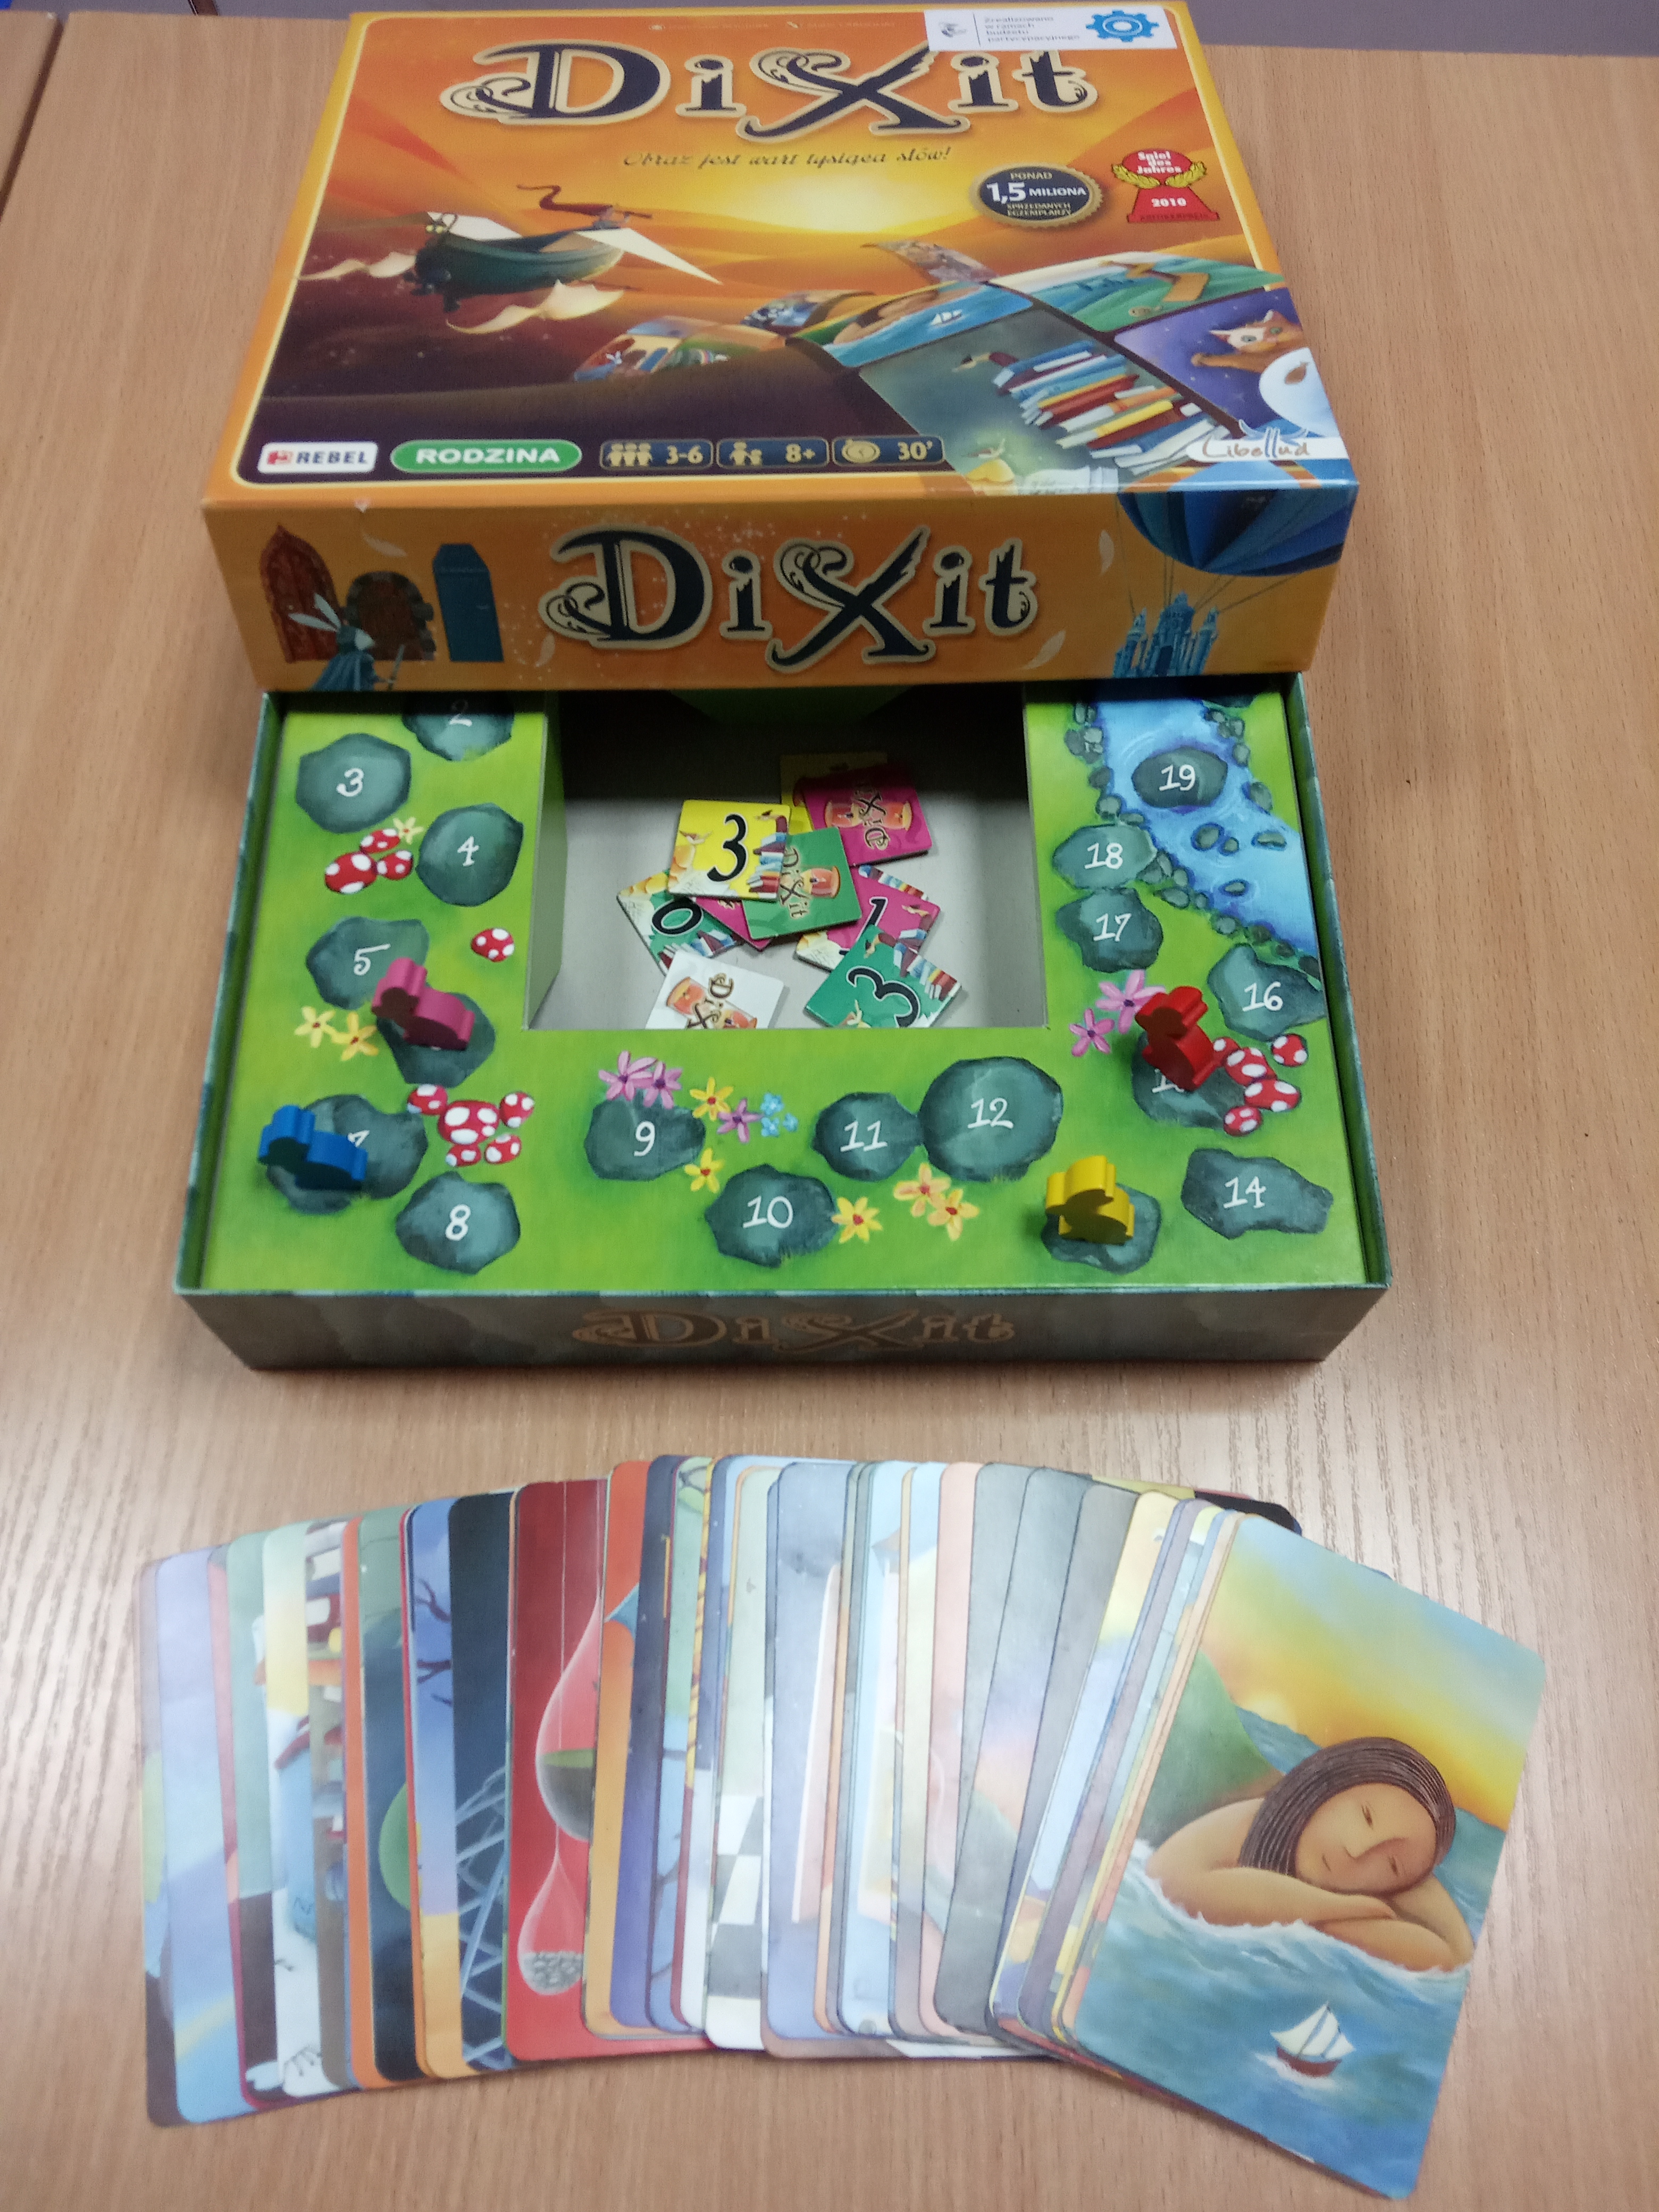 Otwarte opakowanie gry o nazwie Dixit, karty do gry są przed opakowaniem.